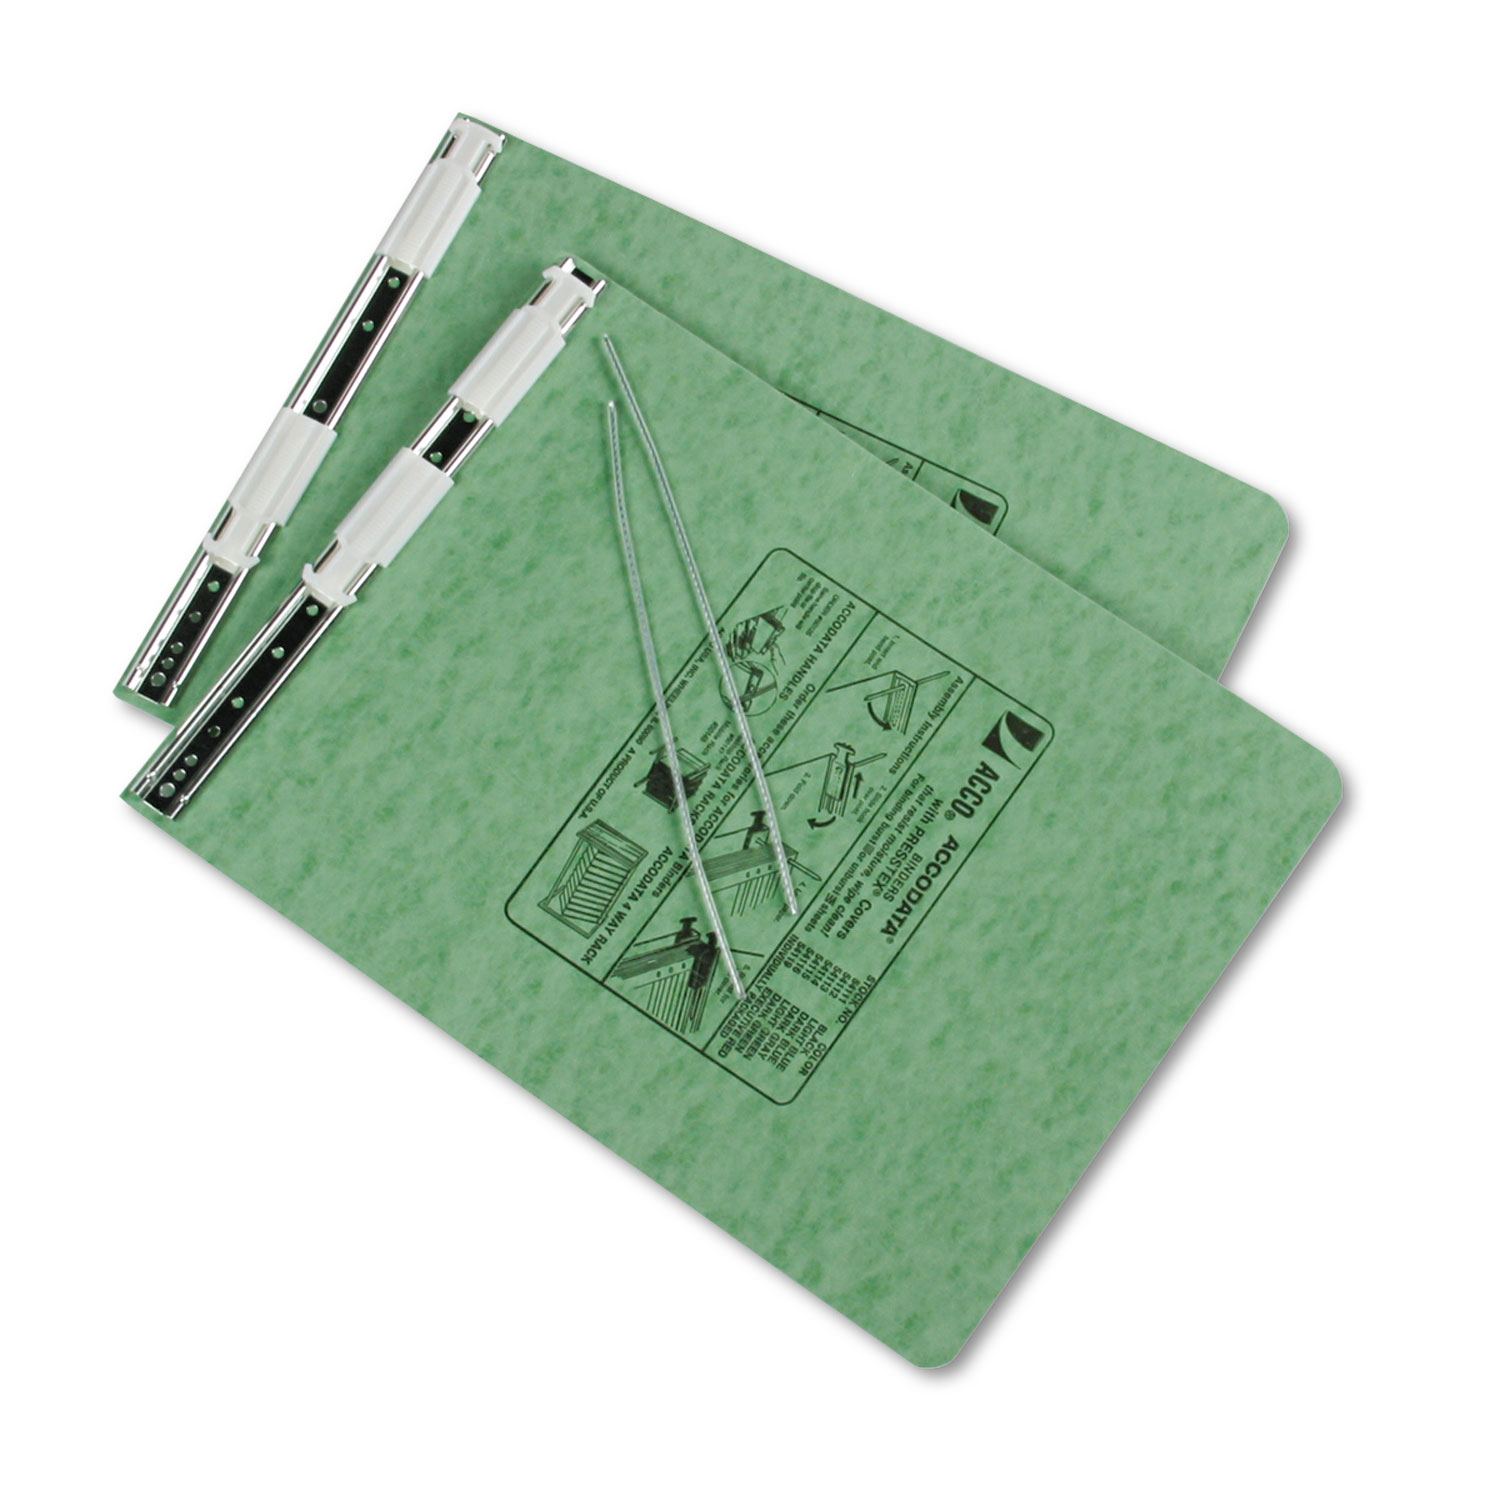 PRESSTEX Covers w/Storage Hooks, 6 Cap, 9 1/2 x 11, Light Green